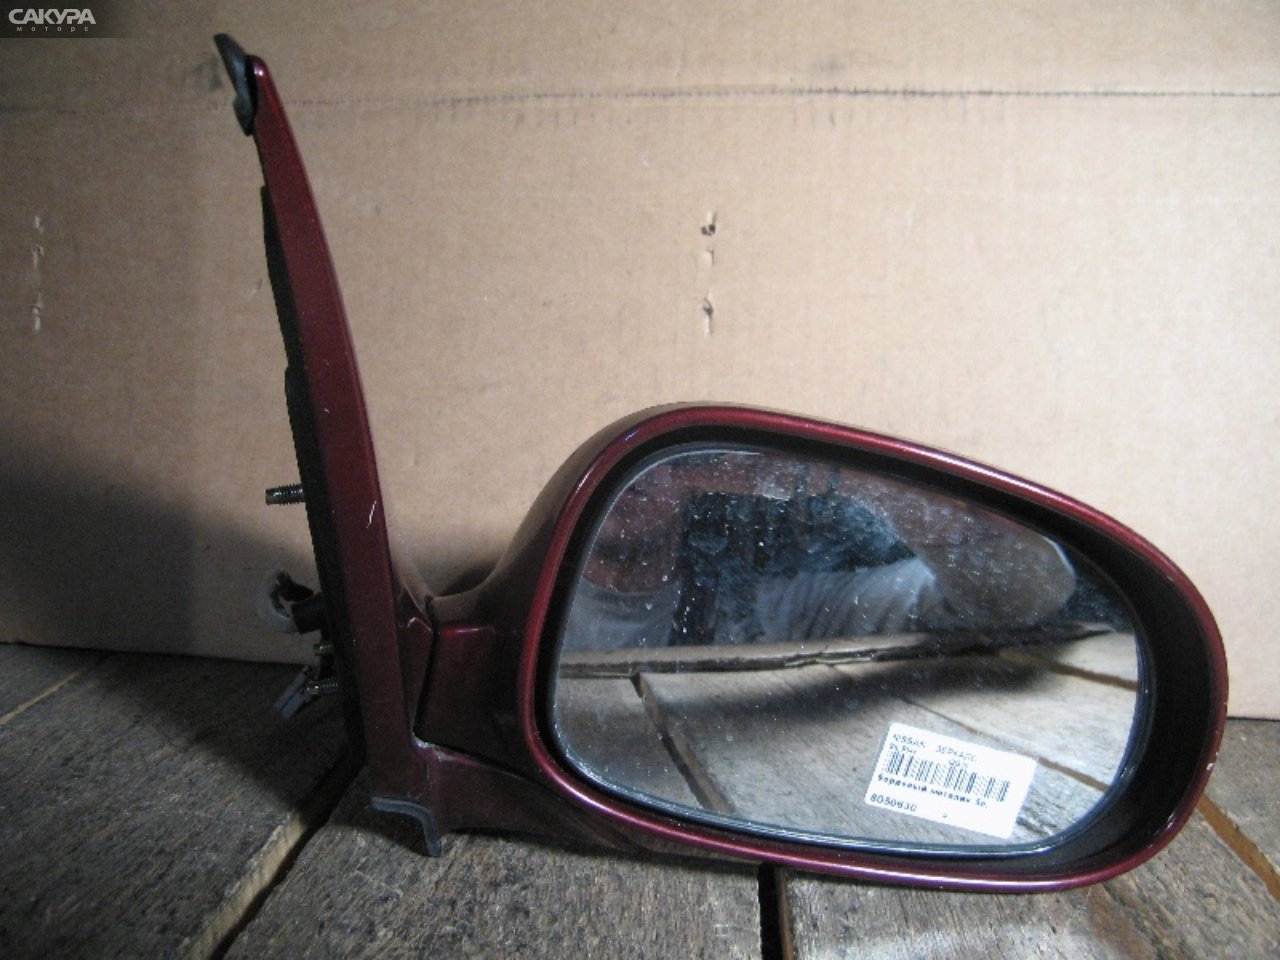 Зеркало боковое правое Nissan Bluebird Sylphy QG10: купить в Сакура Абакан.